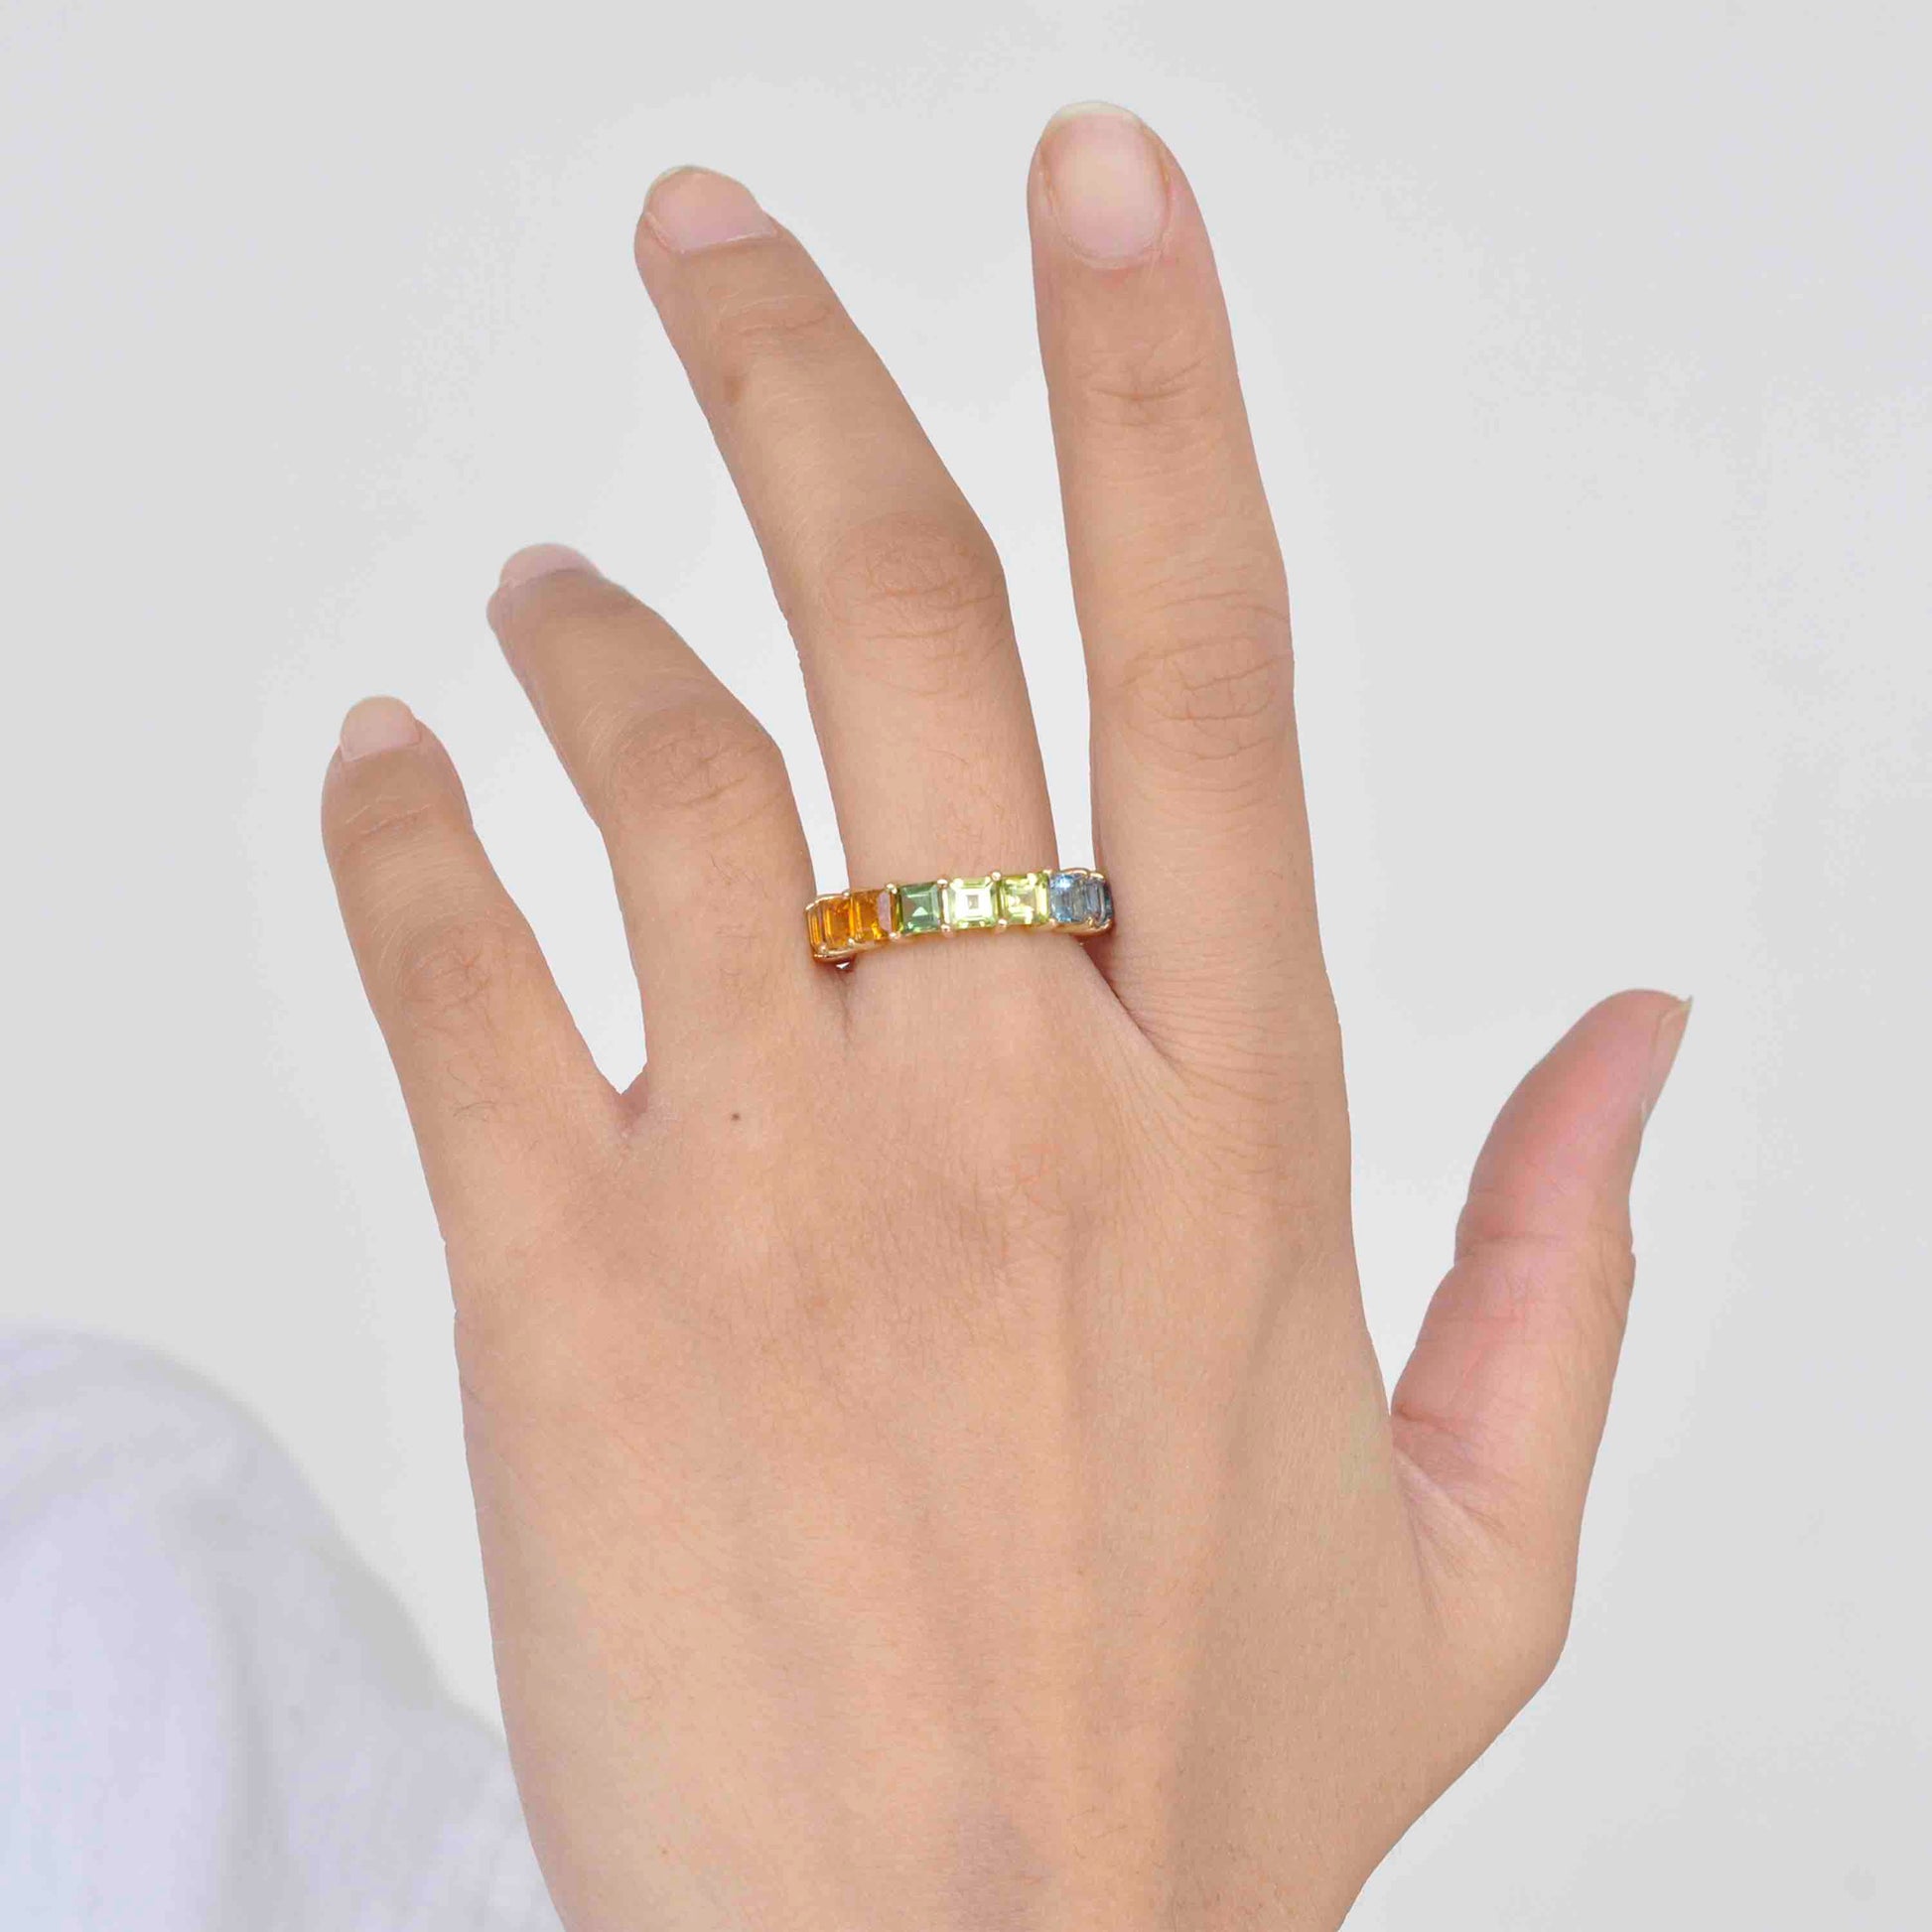 18K Gold Prong-Set Rainbow Gemstones Eternity Band Ring - Vaibhav Dhadda Jewelry